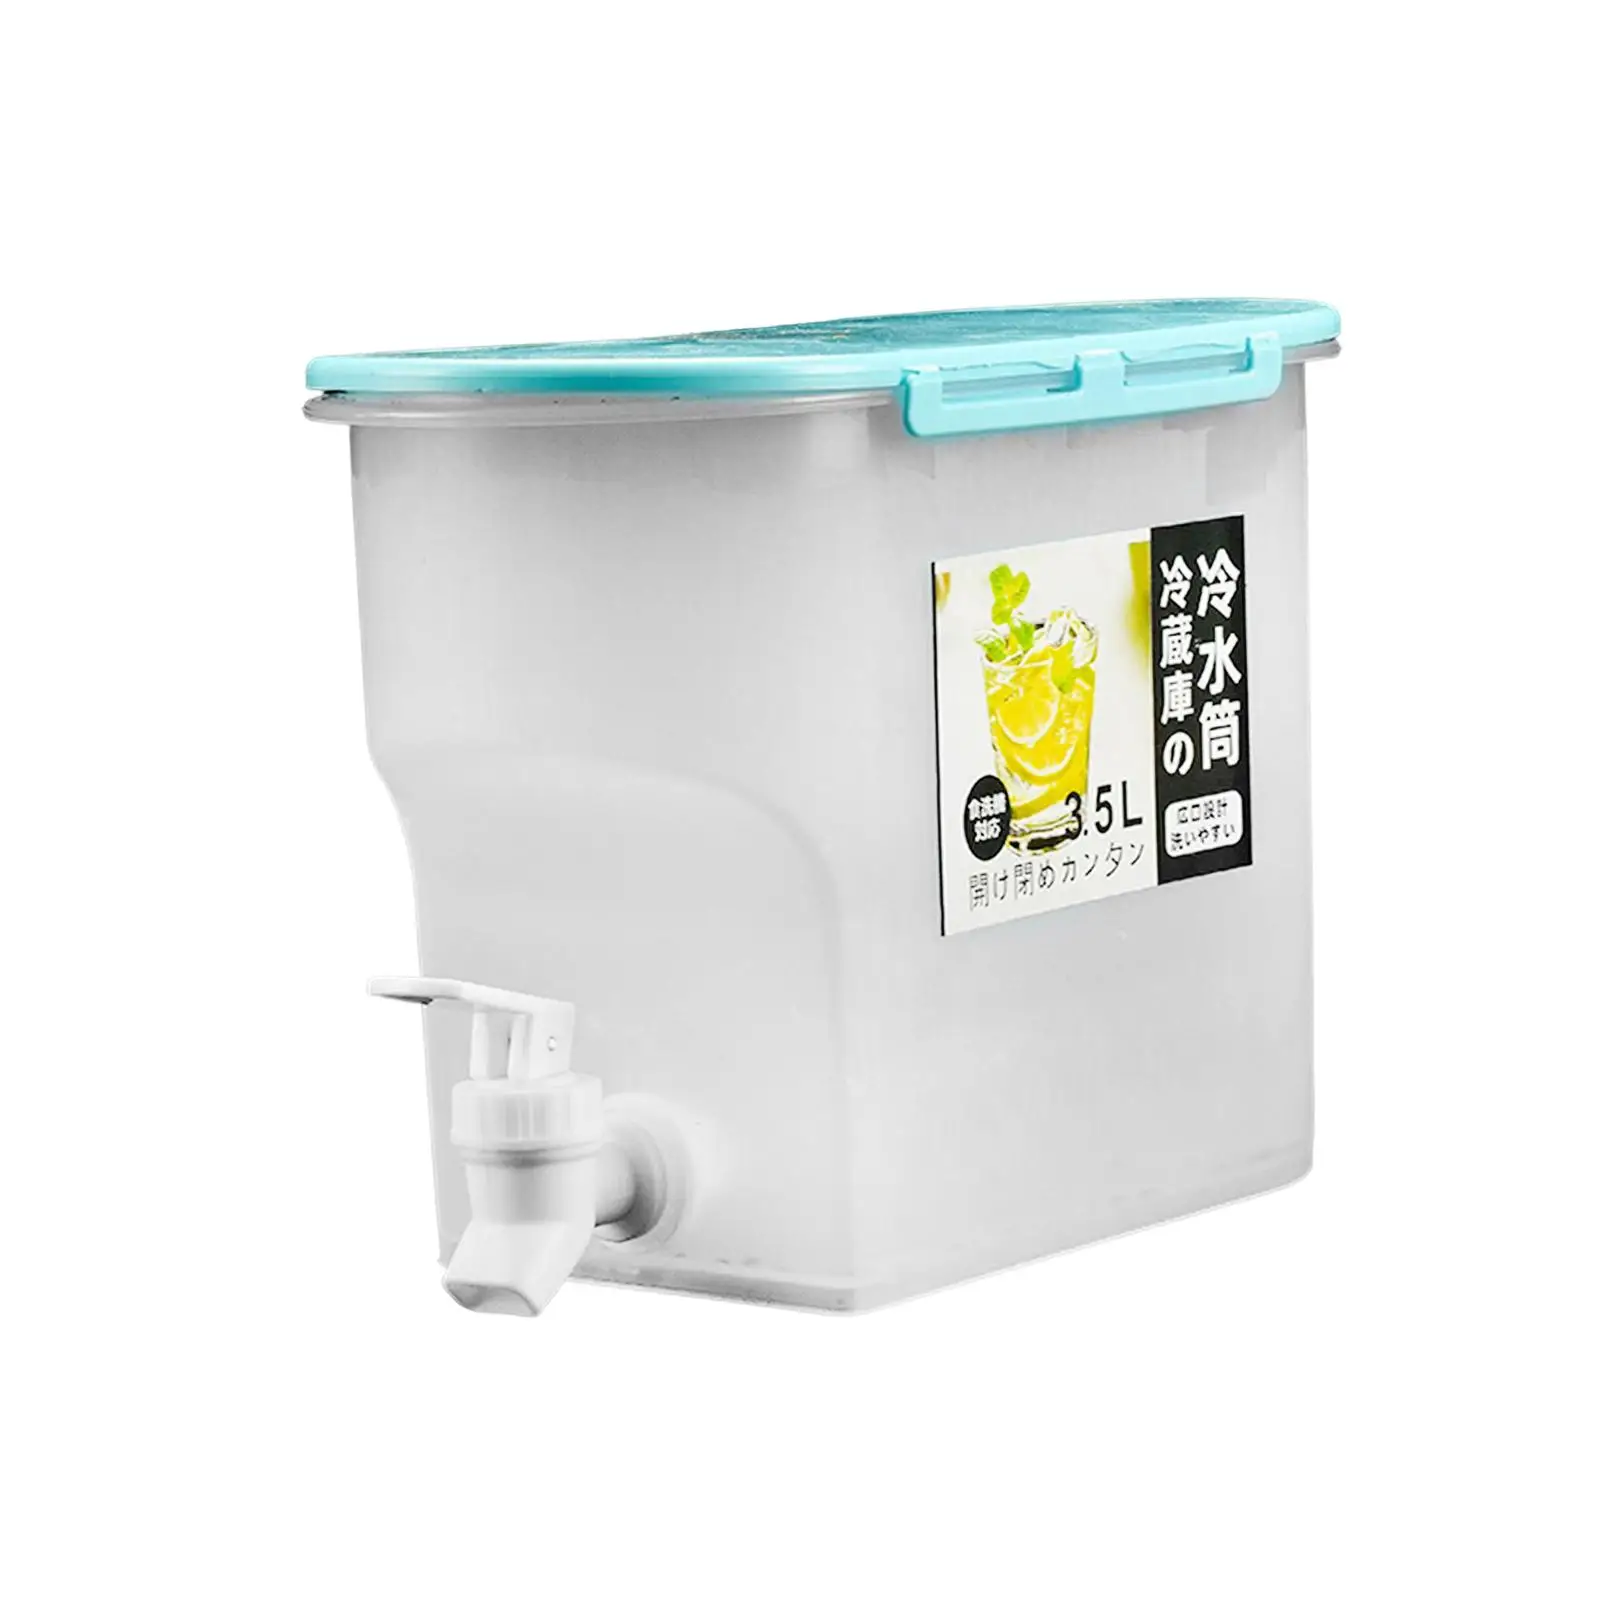 Refrigerator Beverage Dispenser with Faucet Iced Tea Lemon Juice Jug Sealed Cold Drink Juice Dispenser Jug for Home Outdoor BBQ